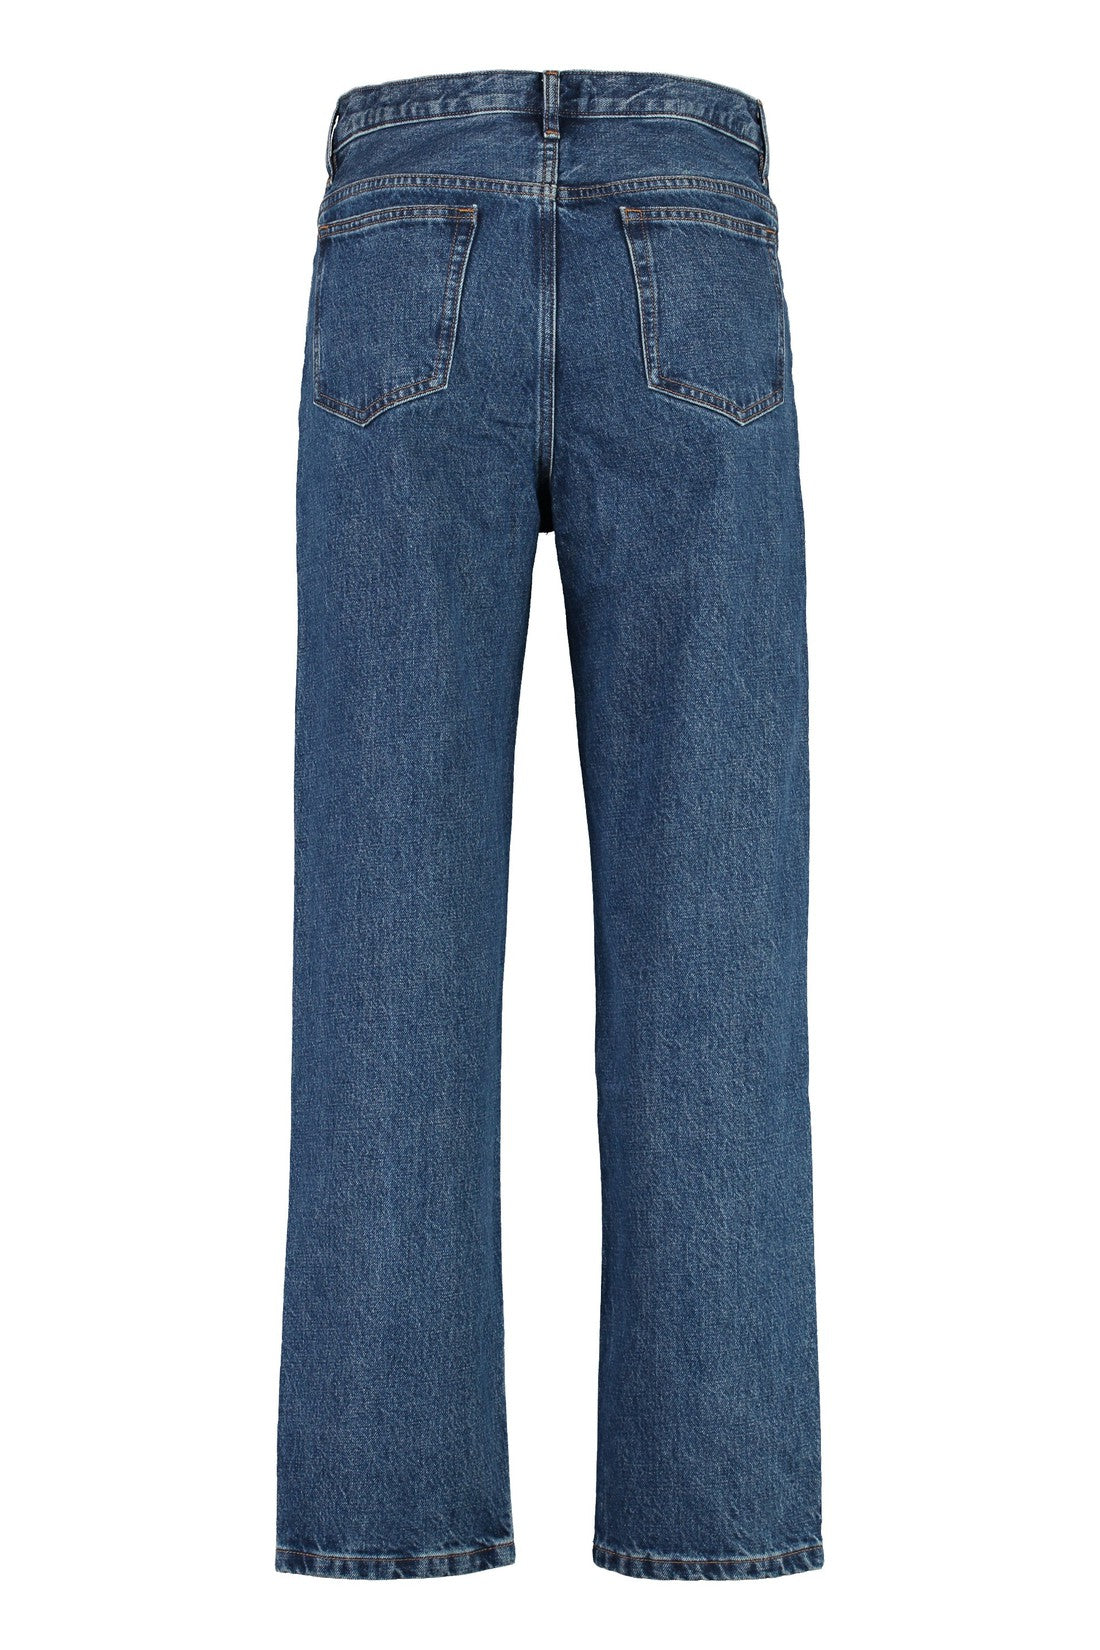 A.P.C.-OUTLET-SALE-Martin 5-pocket straight-leg jeans-ARCHIVIST